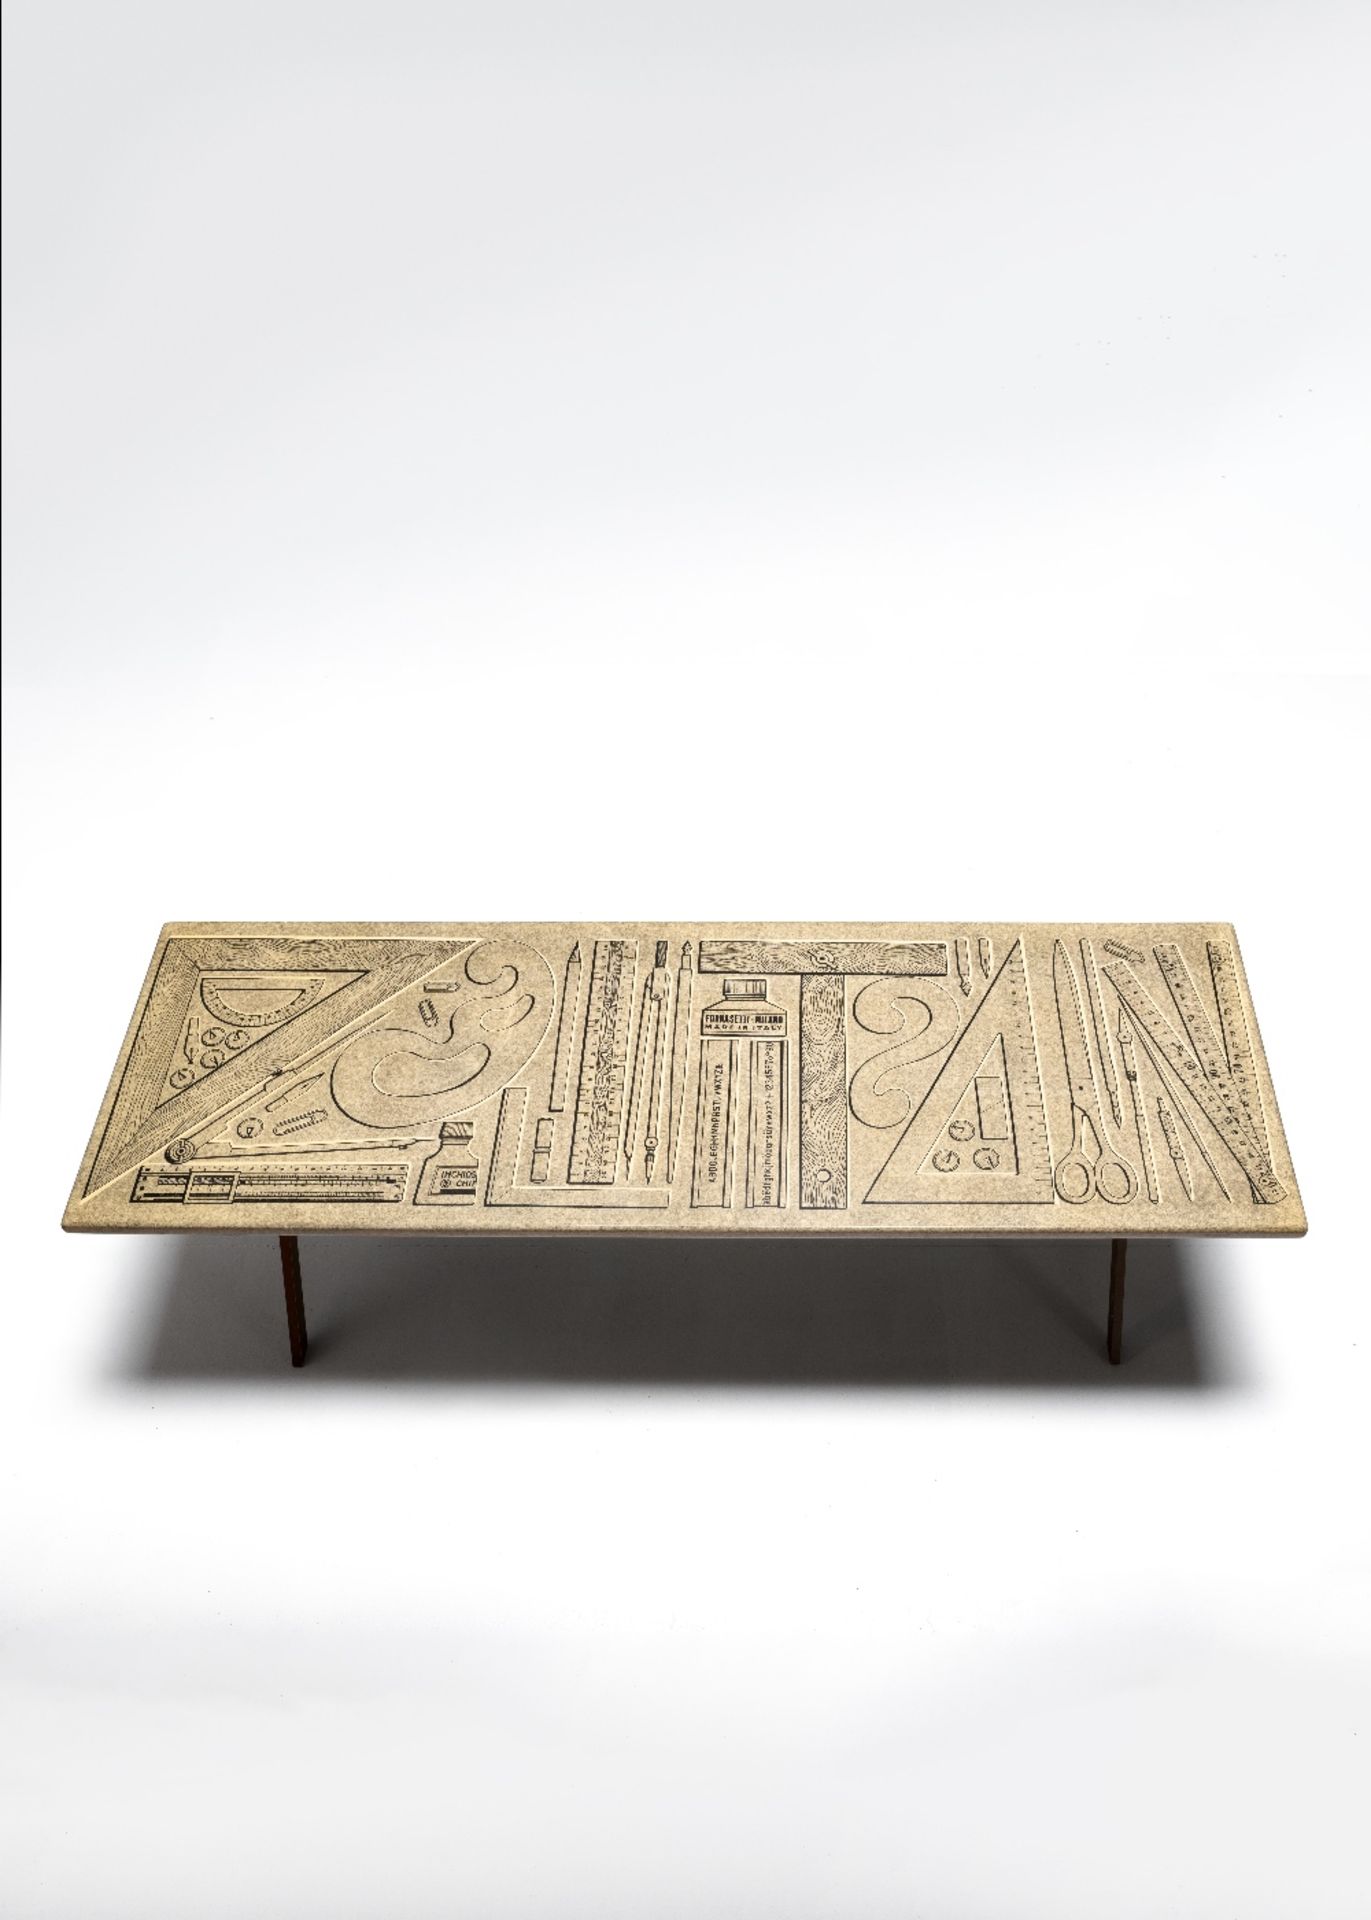 Pierro Fornasetti 'Strumenti da disegno' coffee table, 1960s